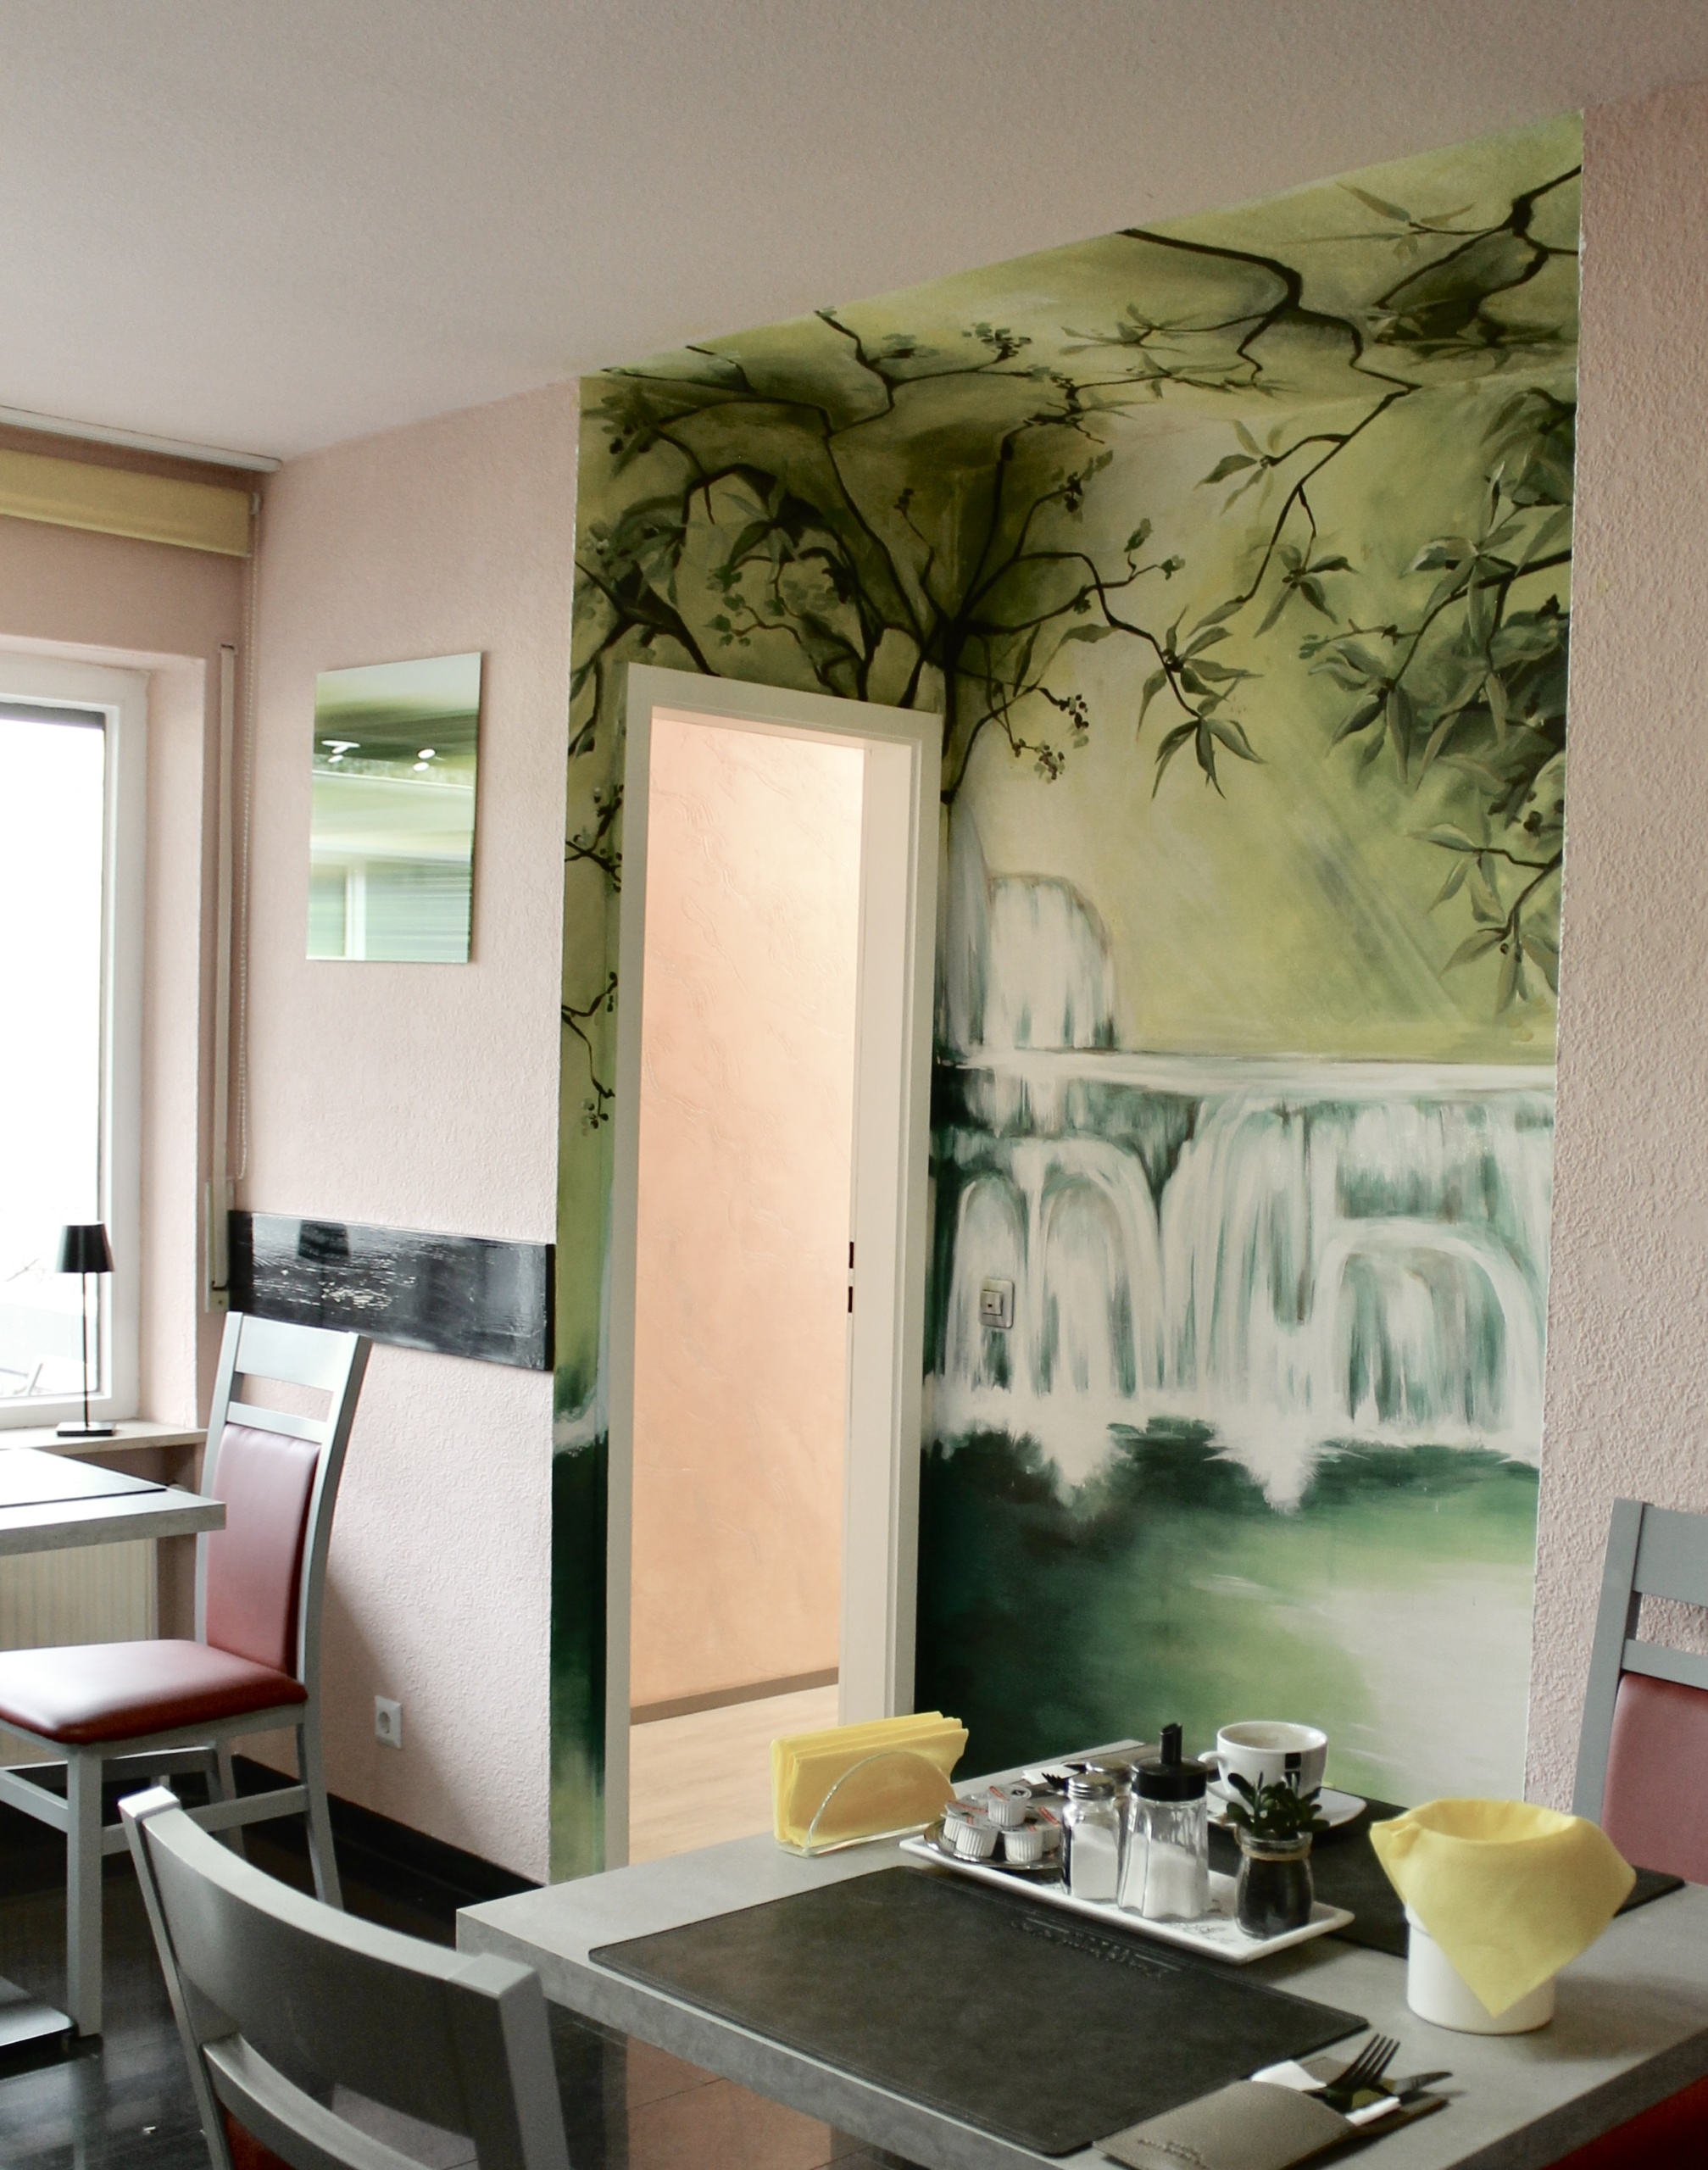 Wandmalerei im Hotel und Gastgewerbe von Anja Kugele in Karlsruhe